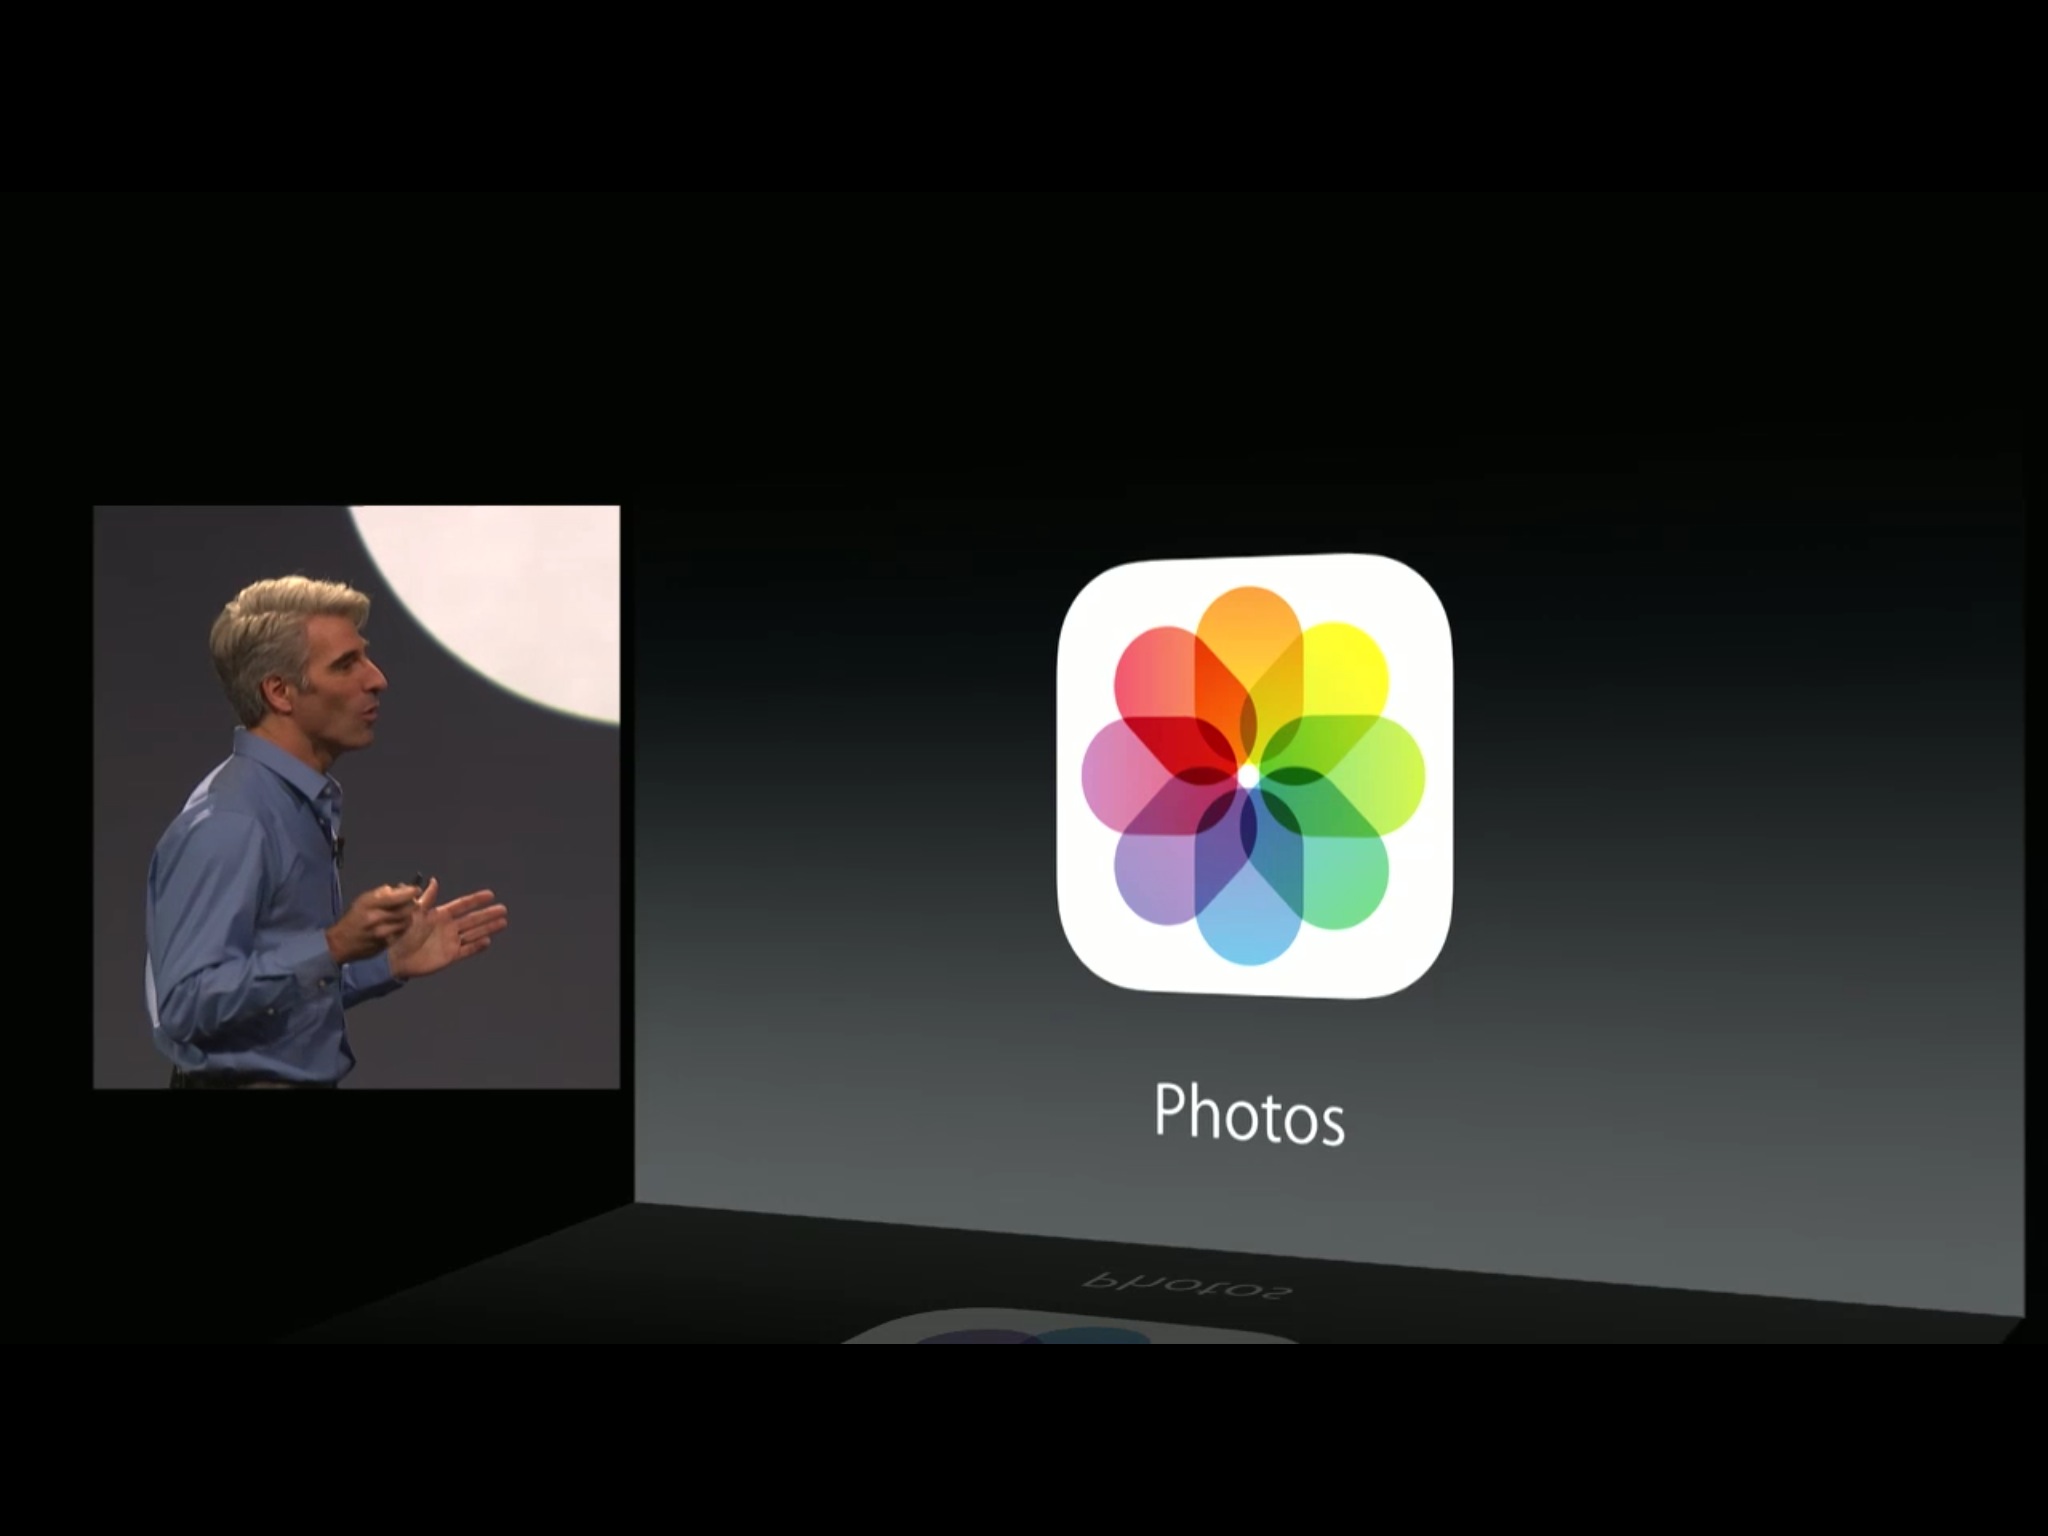 Photos in iOS 8: Explained